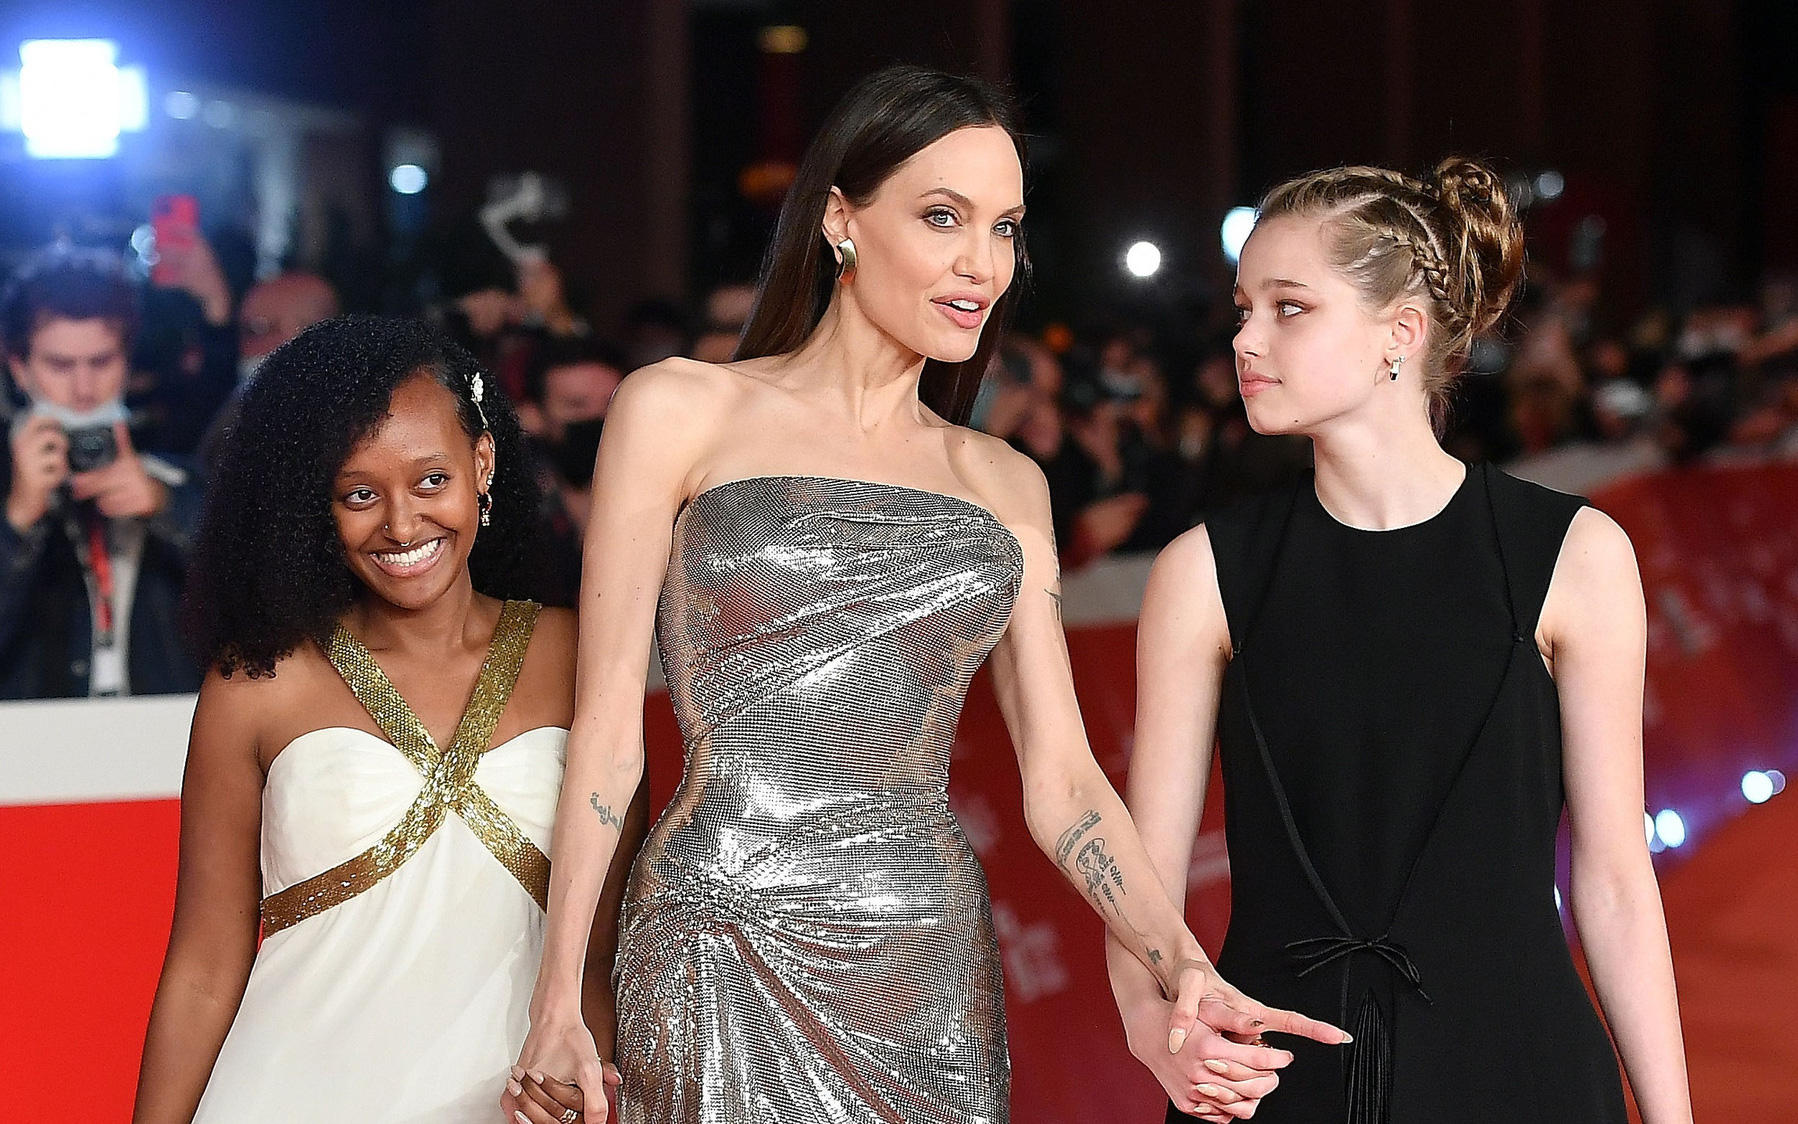 Căng đét: Brad Pitt tố Angelina Jolie lợi dụng con cái để PR phim mới, tung cả bằng chứng chắc nịch liệu có đúng?